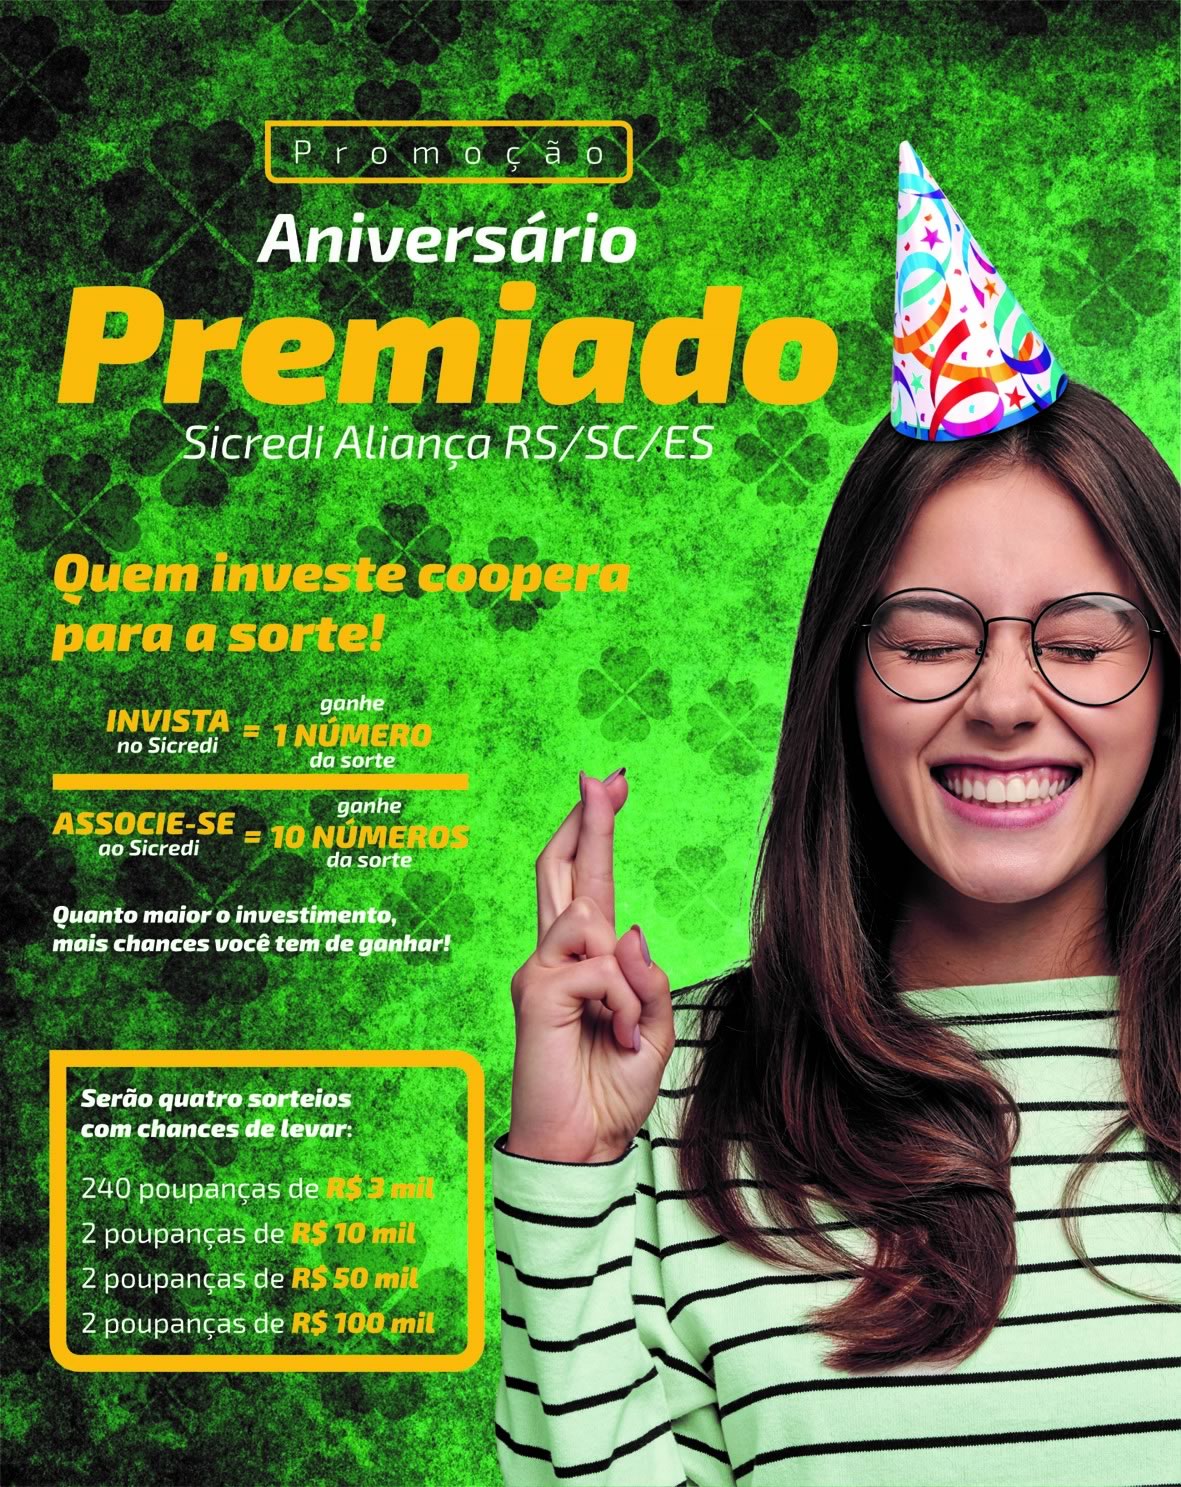 sicredi-promo_aniversario_premiado3